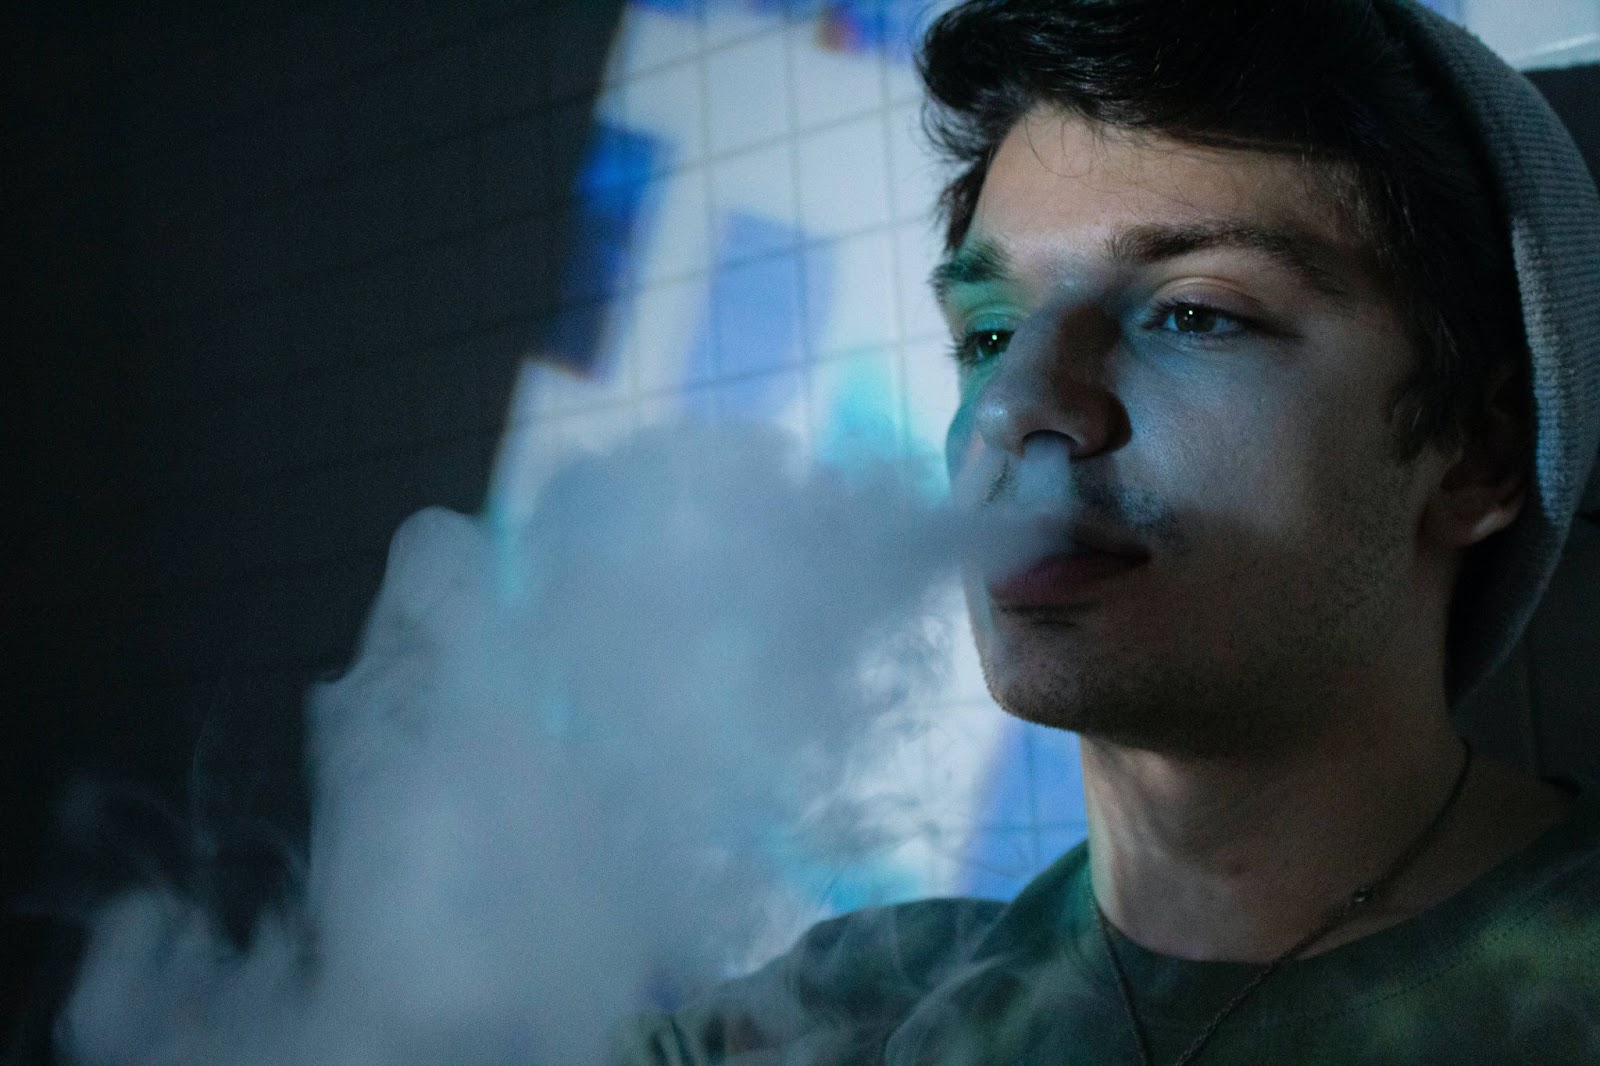 man exhaling smoke